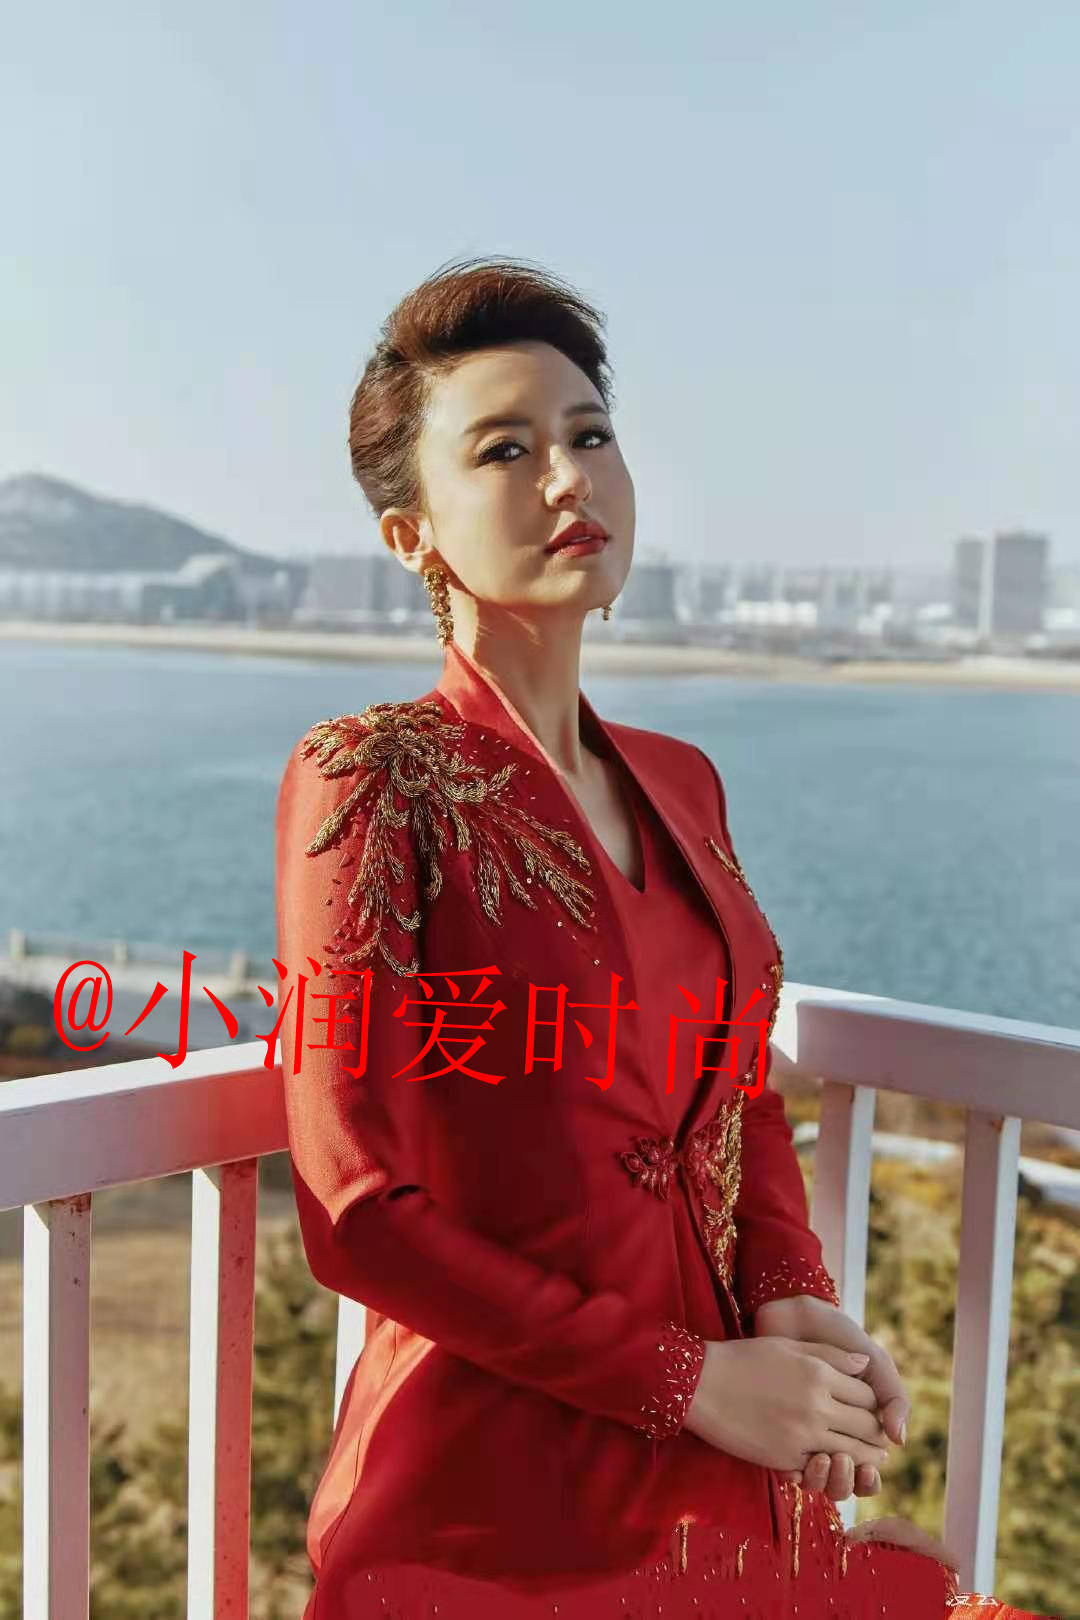 张蕾穿中国红礼服主持春晚,端庄大方不俗气,配上盘发发型好高贵